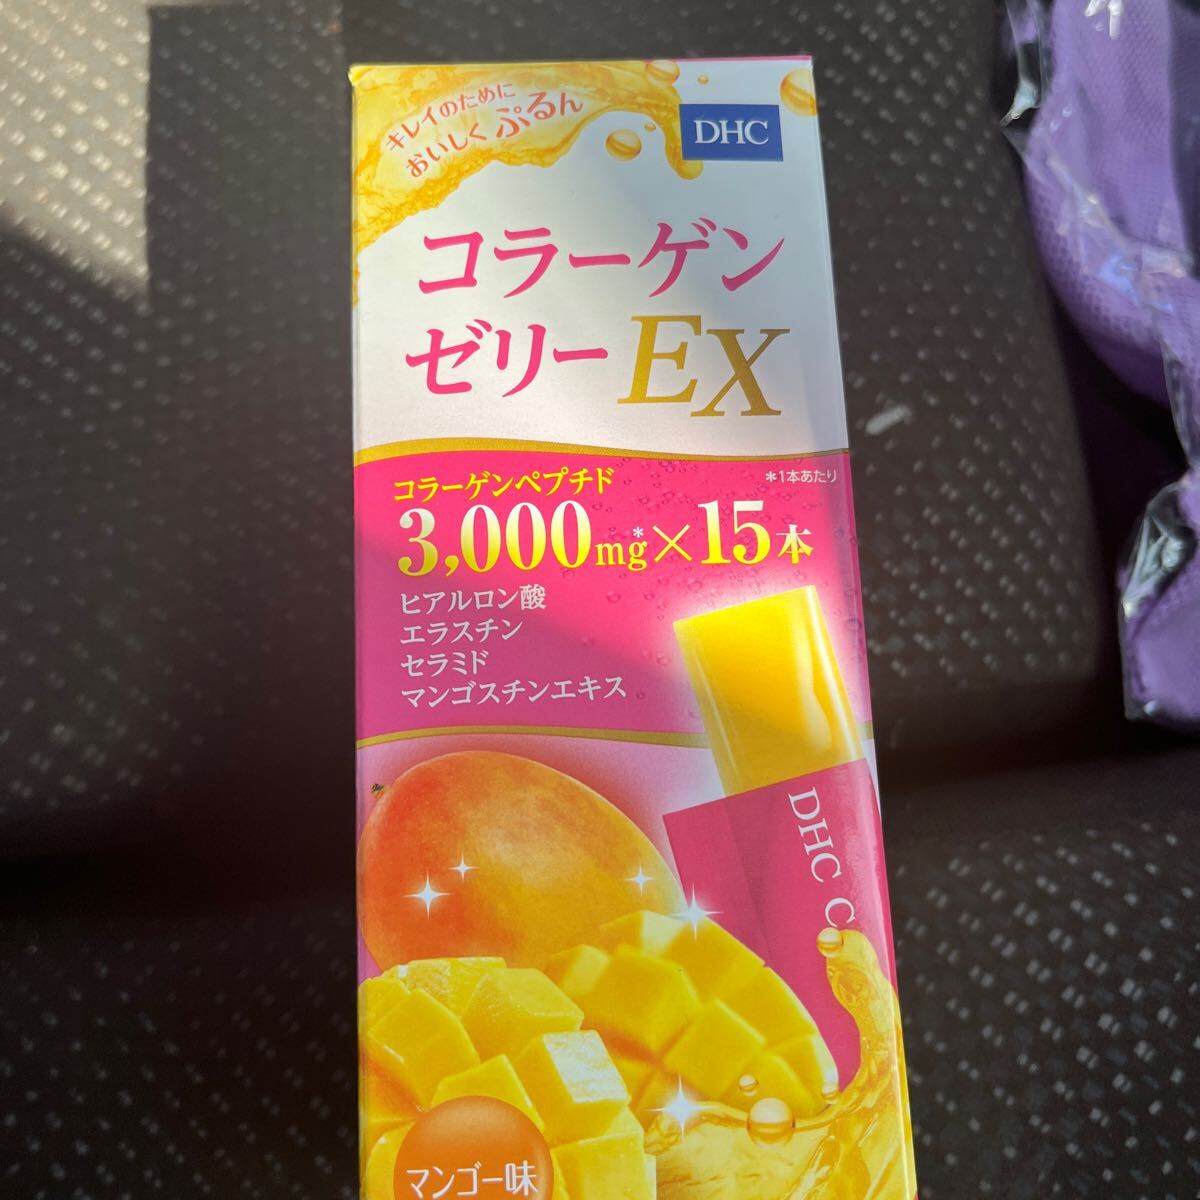 DHC collagen jelly EX mango taste 15. go in 